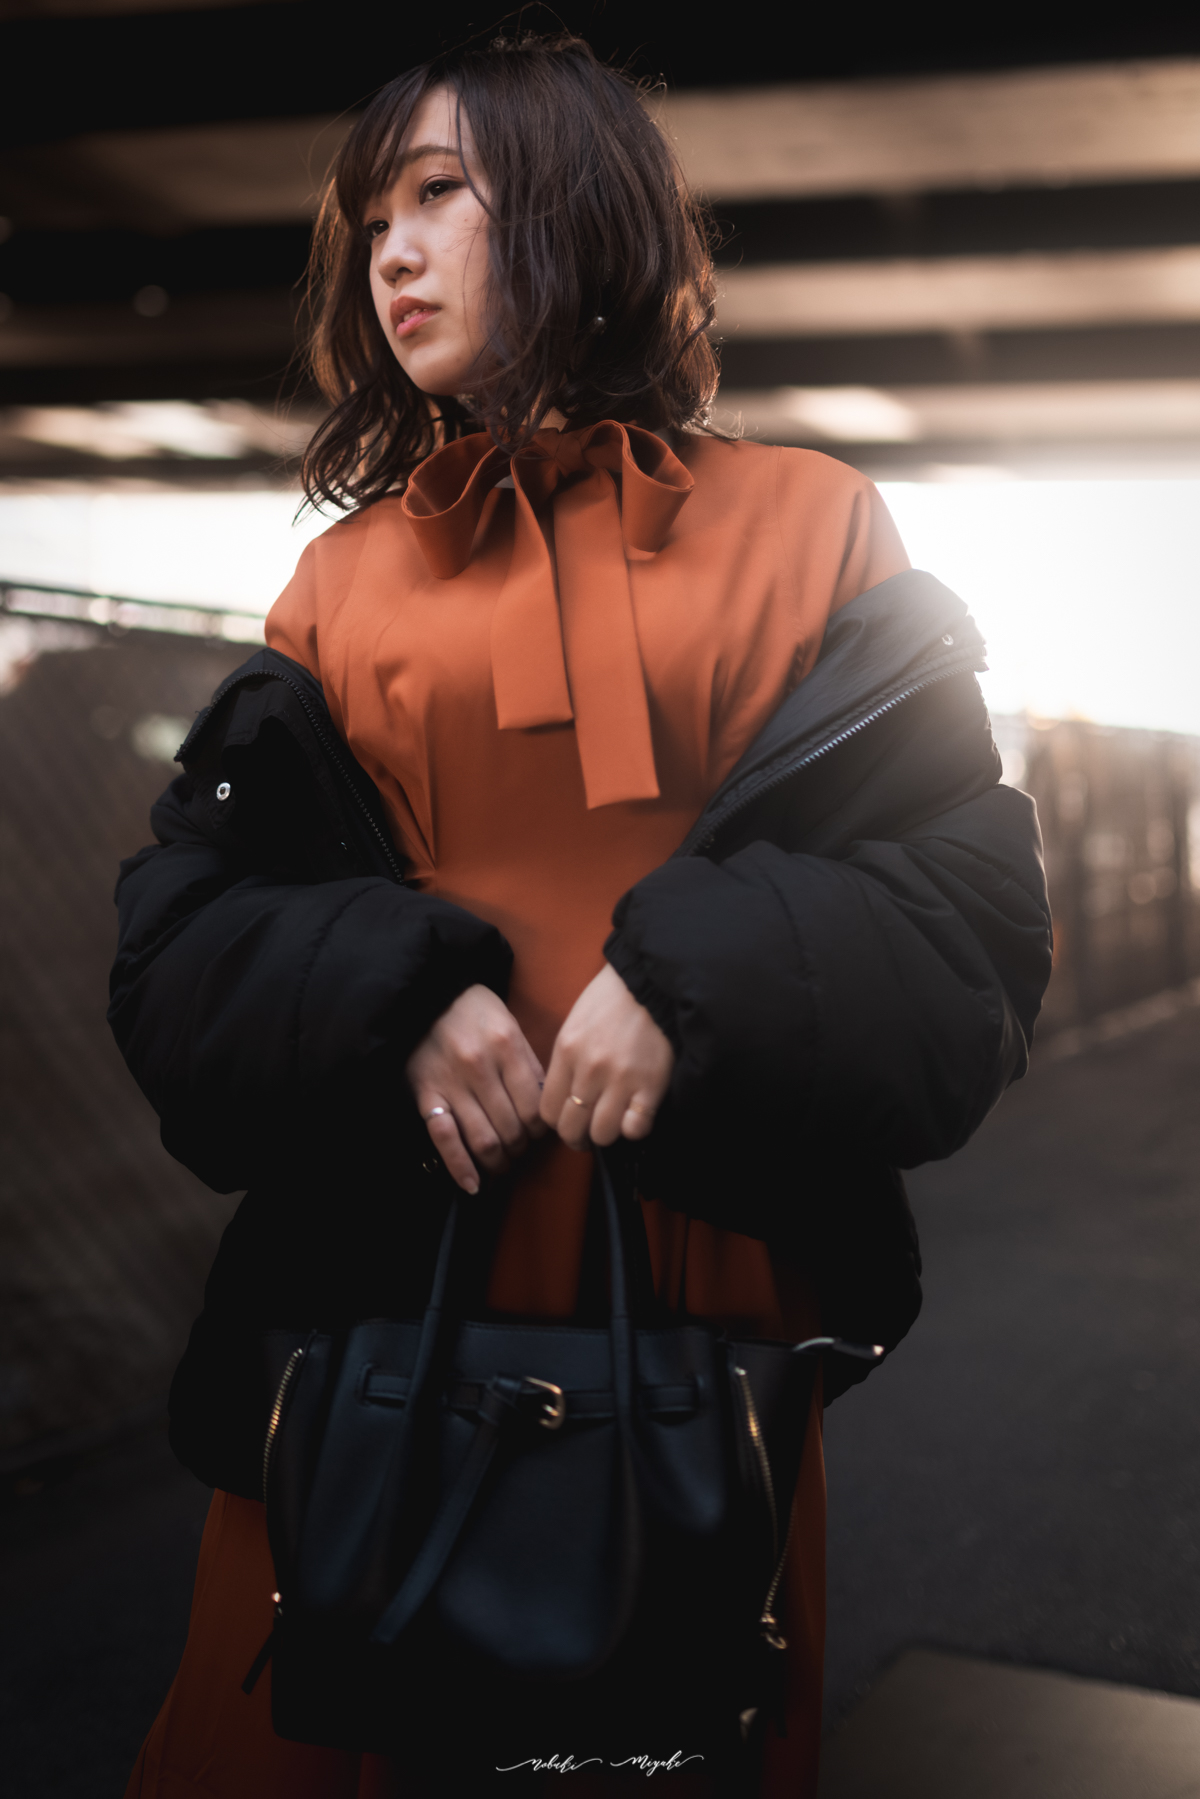 女性のポートレート写真。オレンジのワンピースとジャケットを着ている。